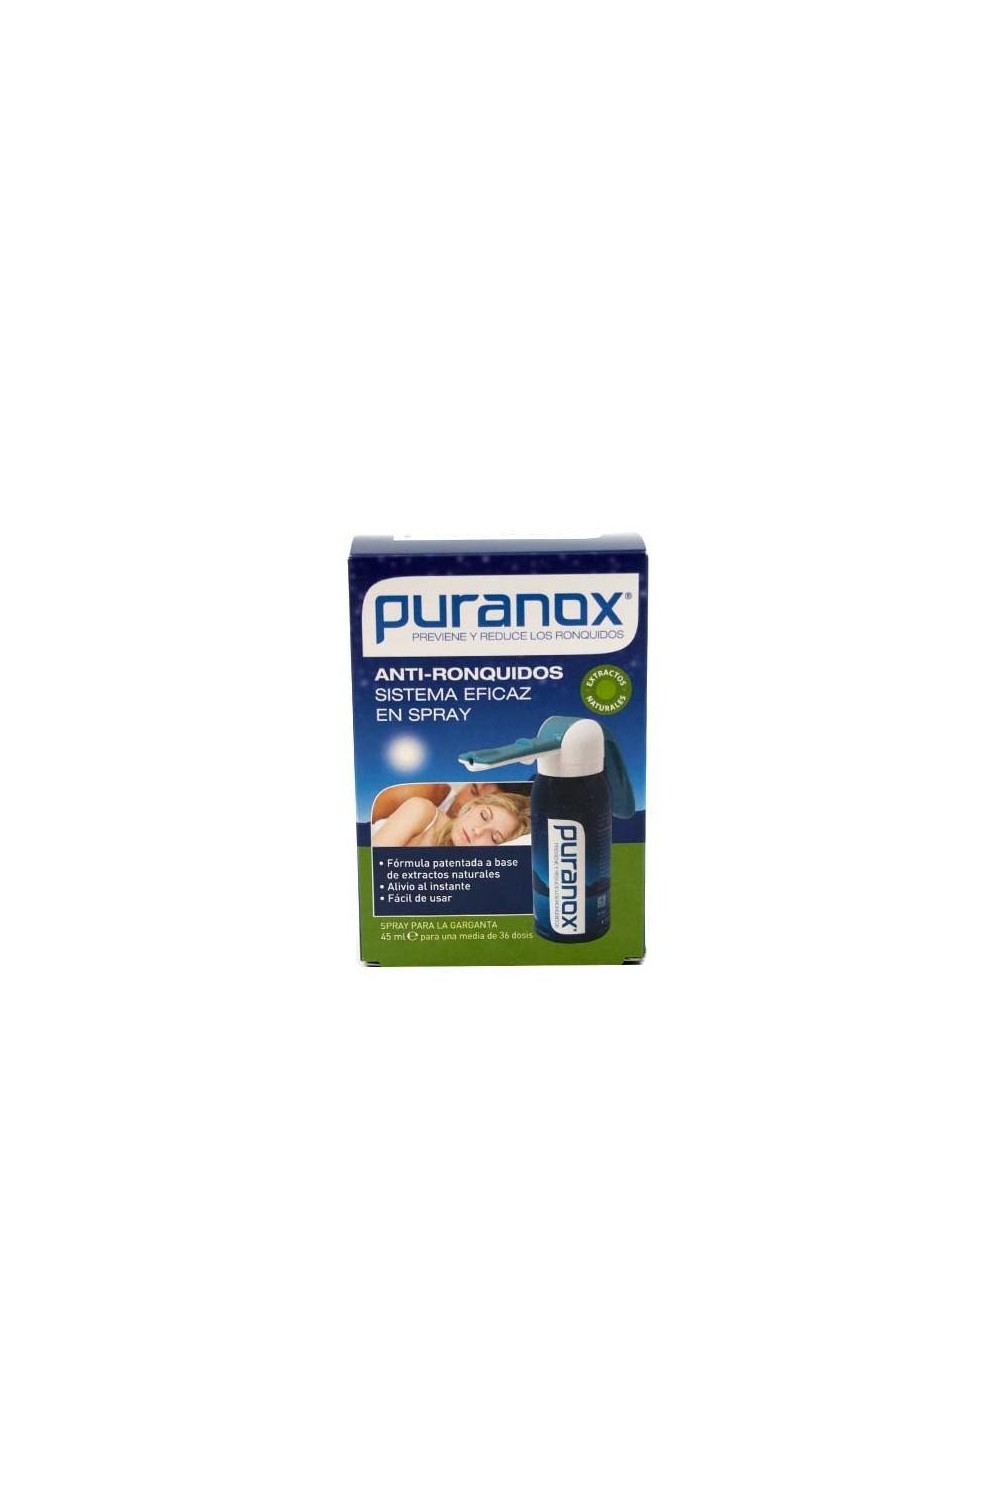 Vfarma Puranox Anti-Snoring Spray 45ml